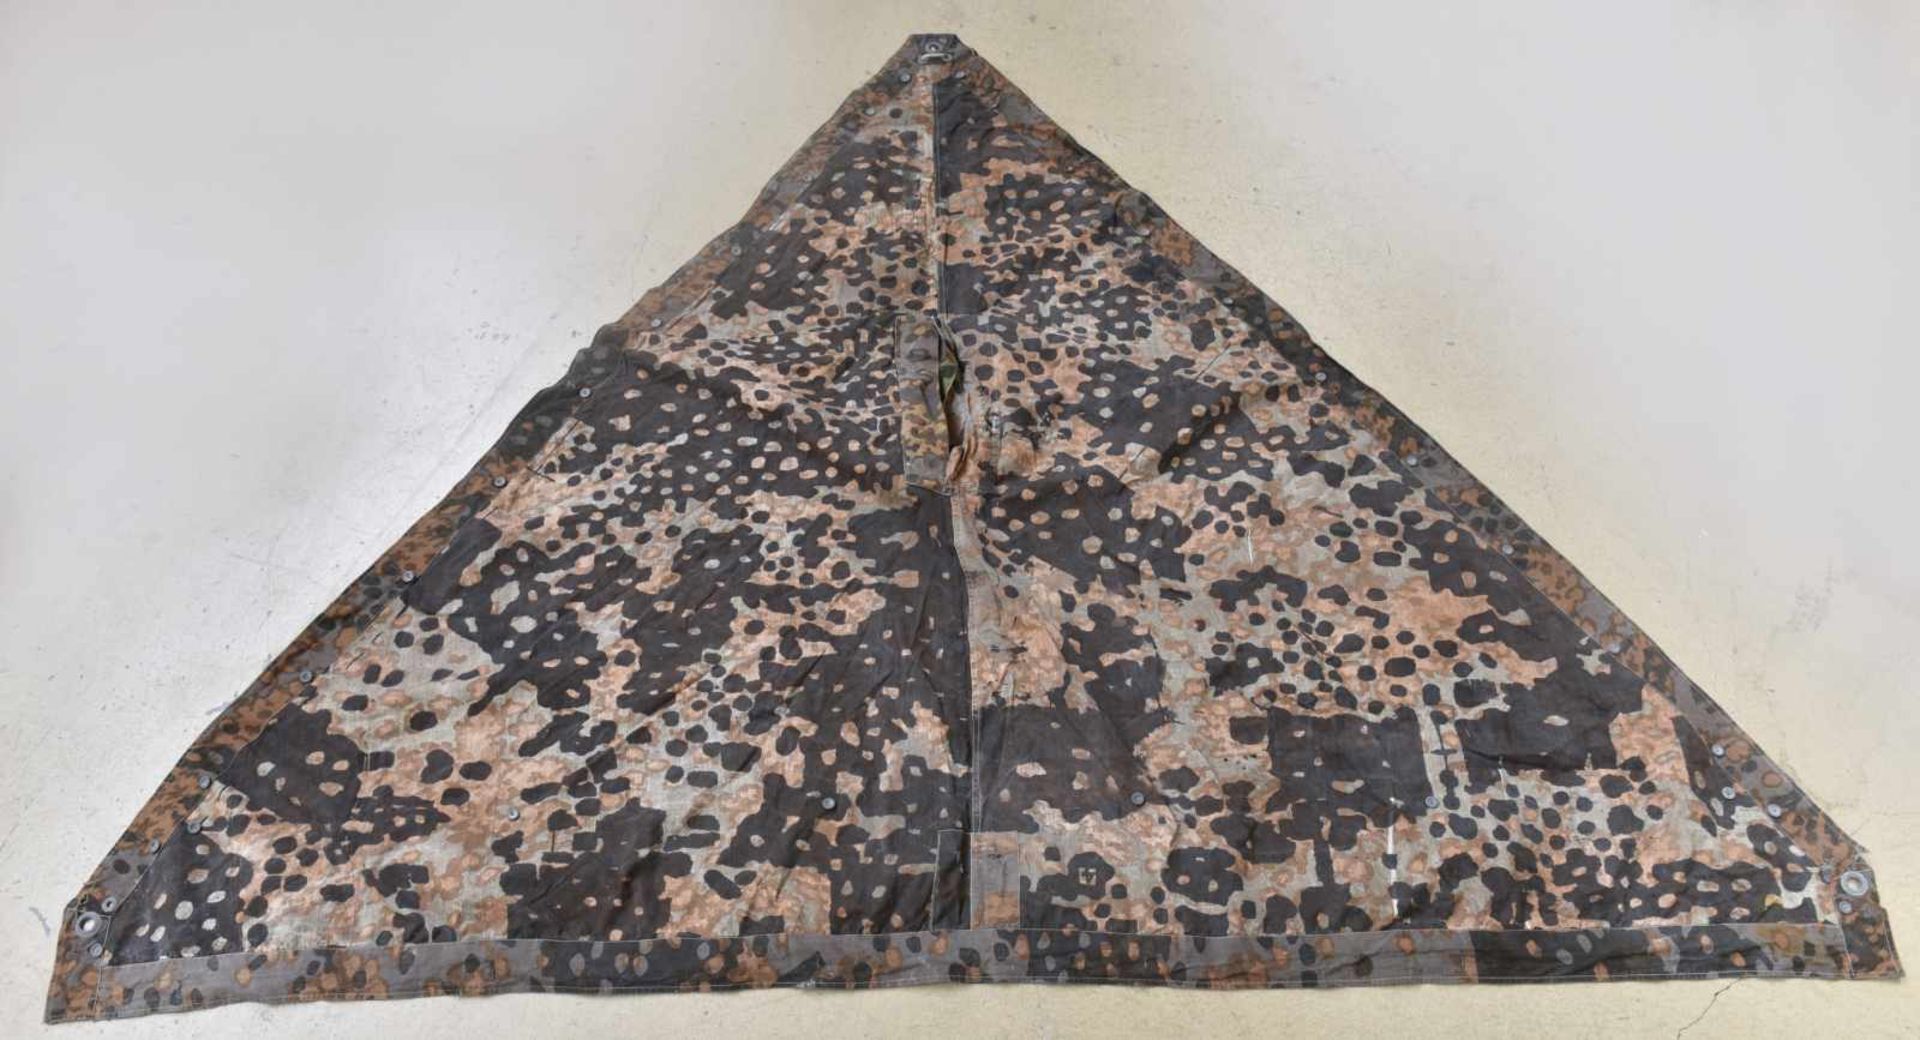 Toile de tente de la Waffen SS numéro 4 Camouflage été et automne, coupon côté été marqué 4. - Bild 2 aus 4